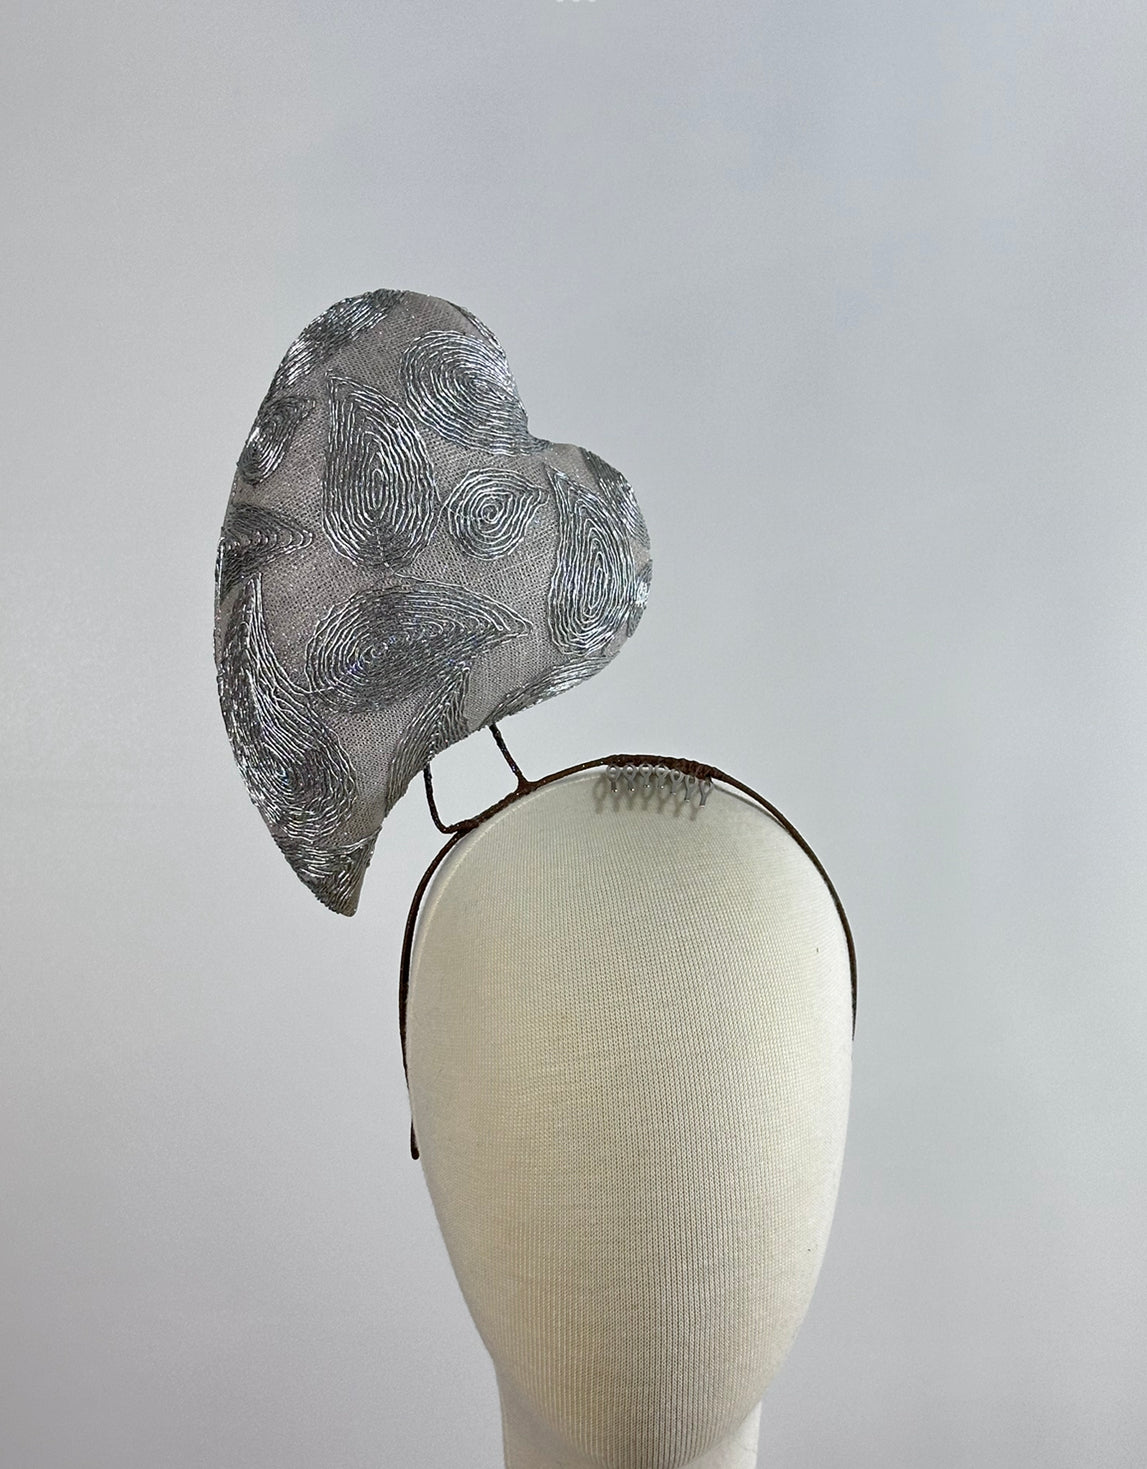 Silver Love Heart percher headpiece by Possum Ball